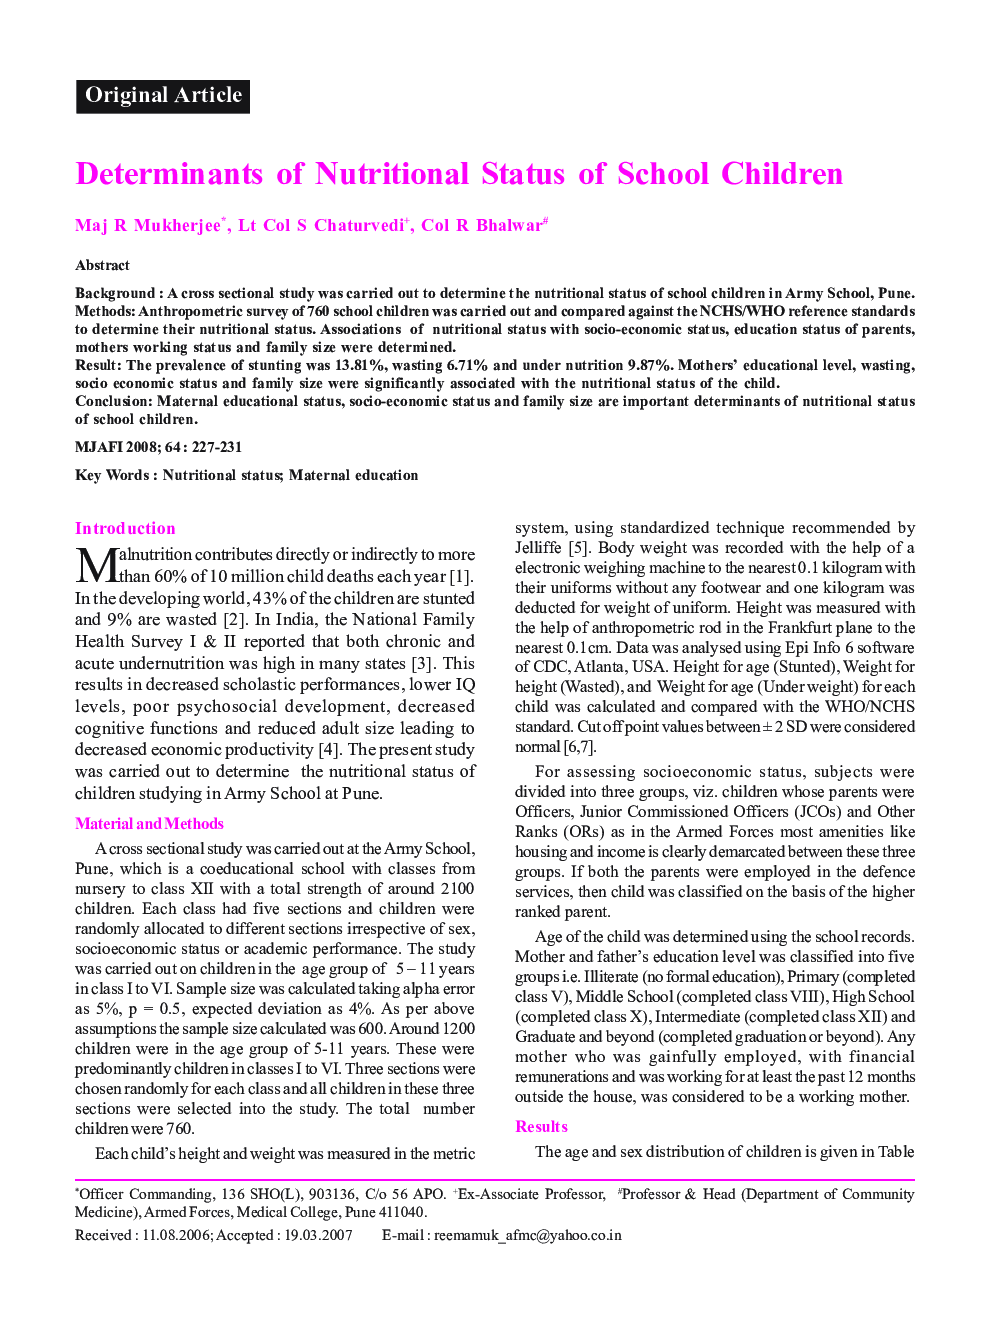 Determinants of Nutritional Status of School Children